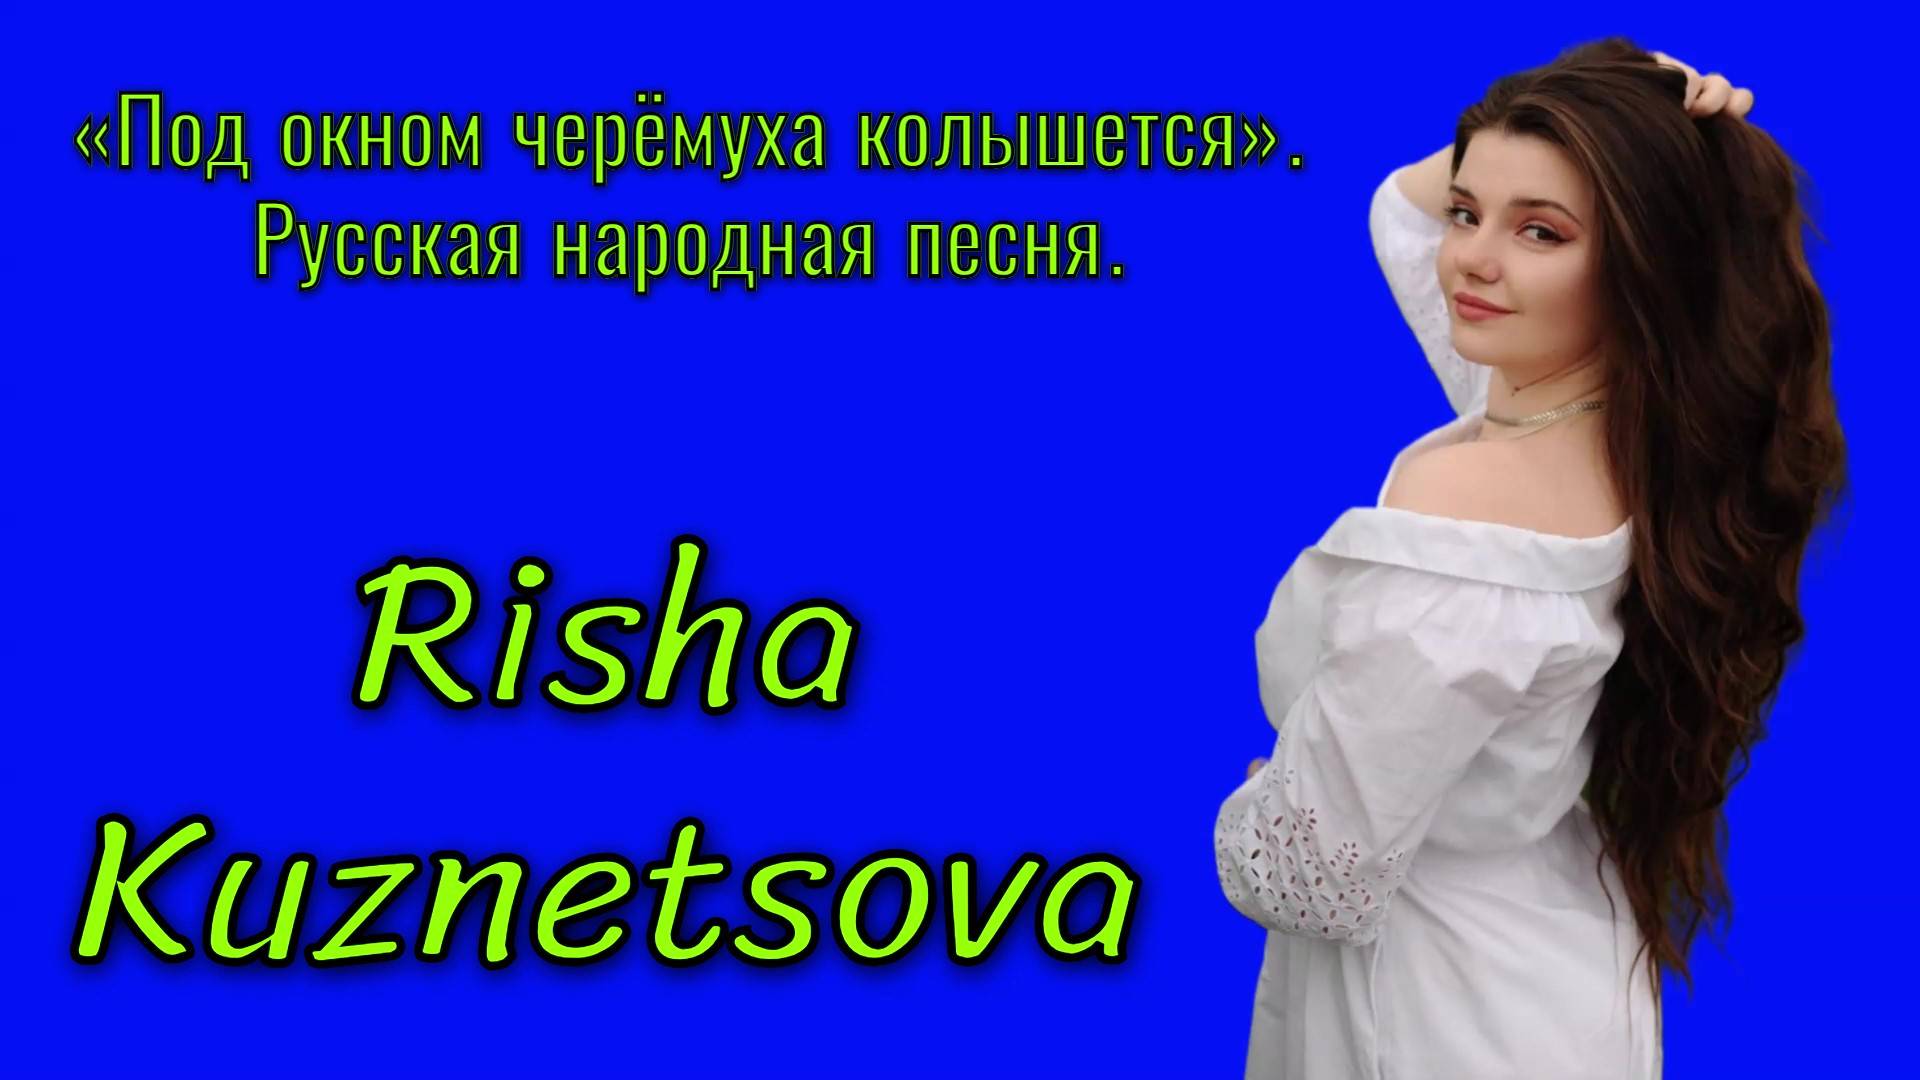 Risha Kuznetsova — «Под окном черёмуха колышется» (русская народная песня) #русскиепесни #живойзвук